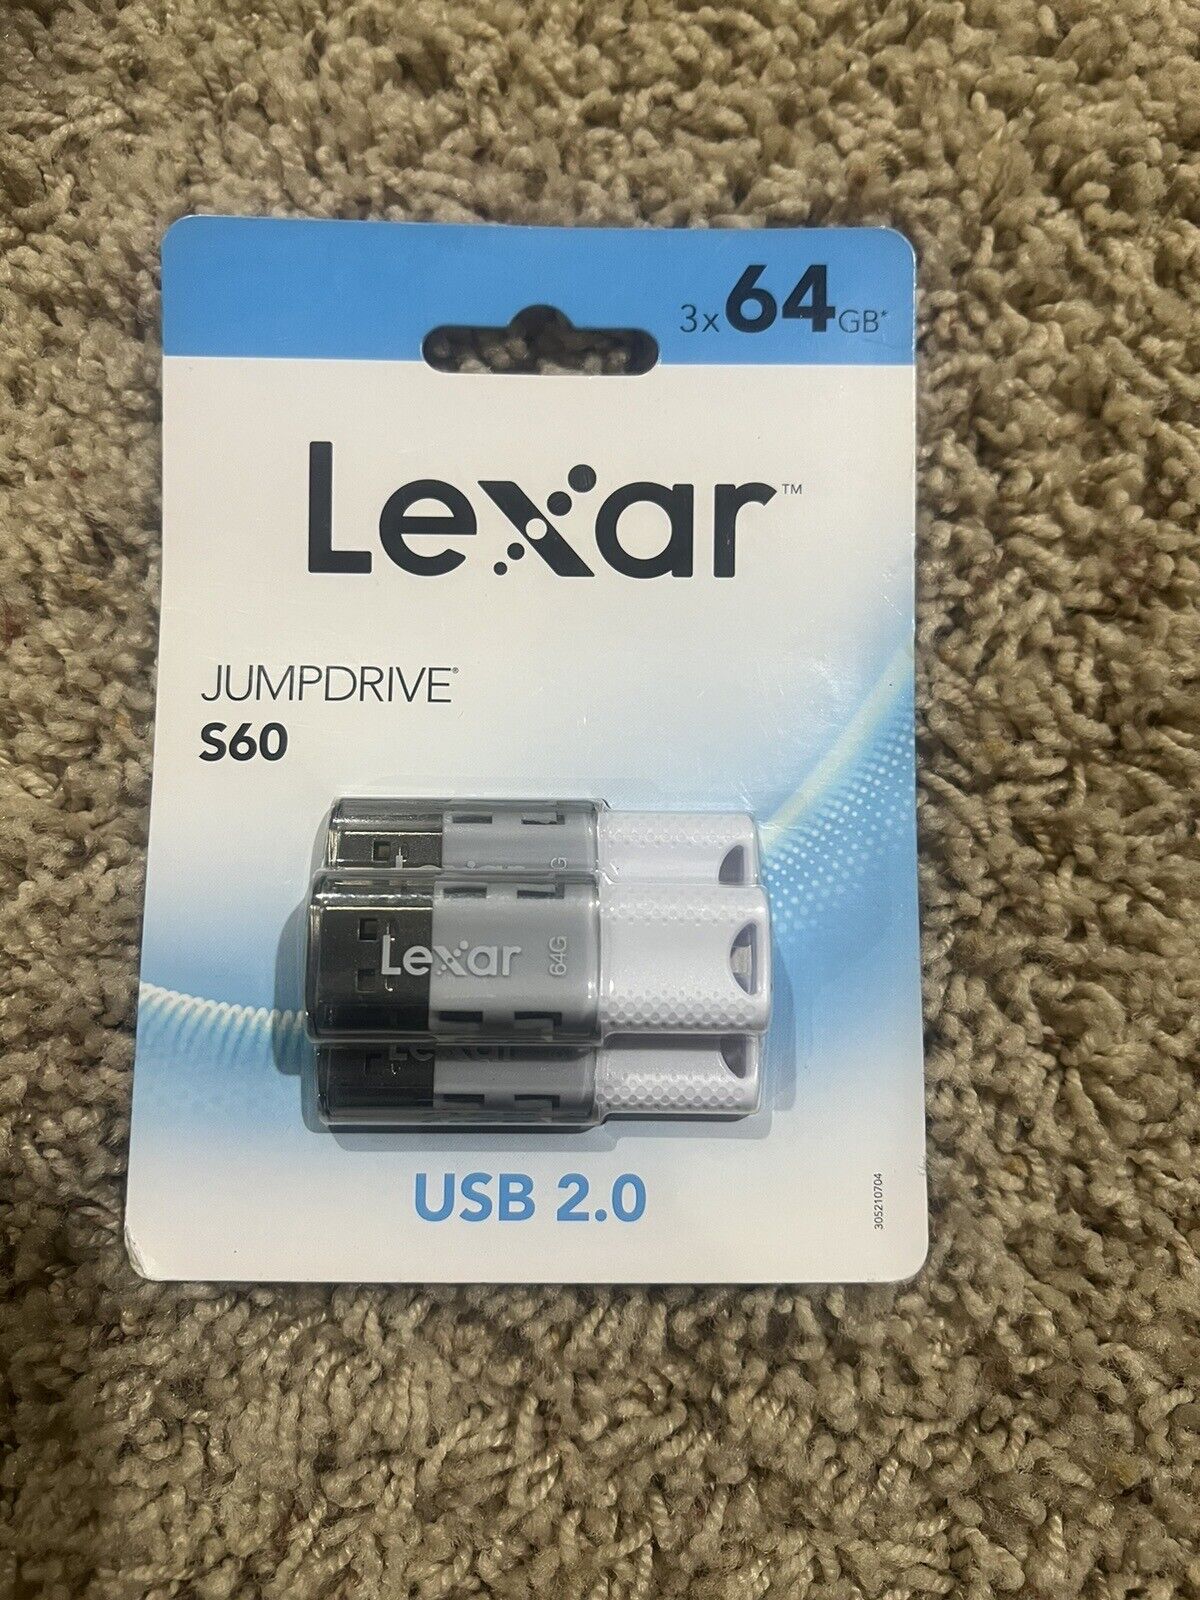 Lexar JumpDrive S60 USB 2.0 Flash Drives, 3x64GB, Black